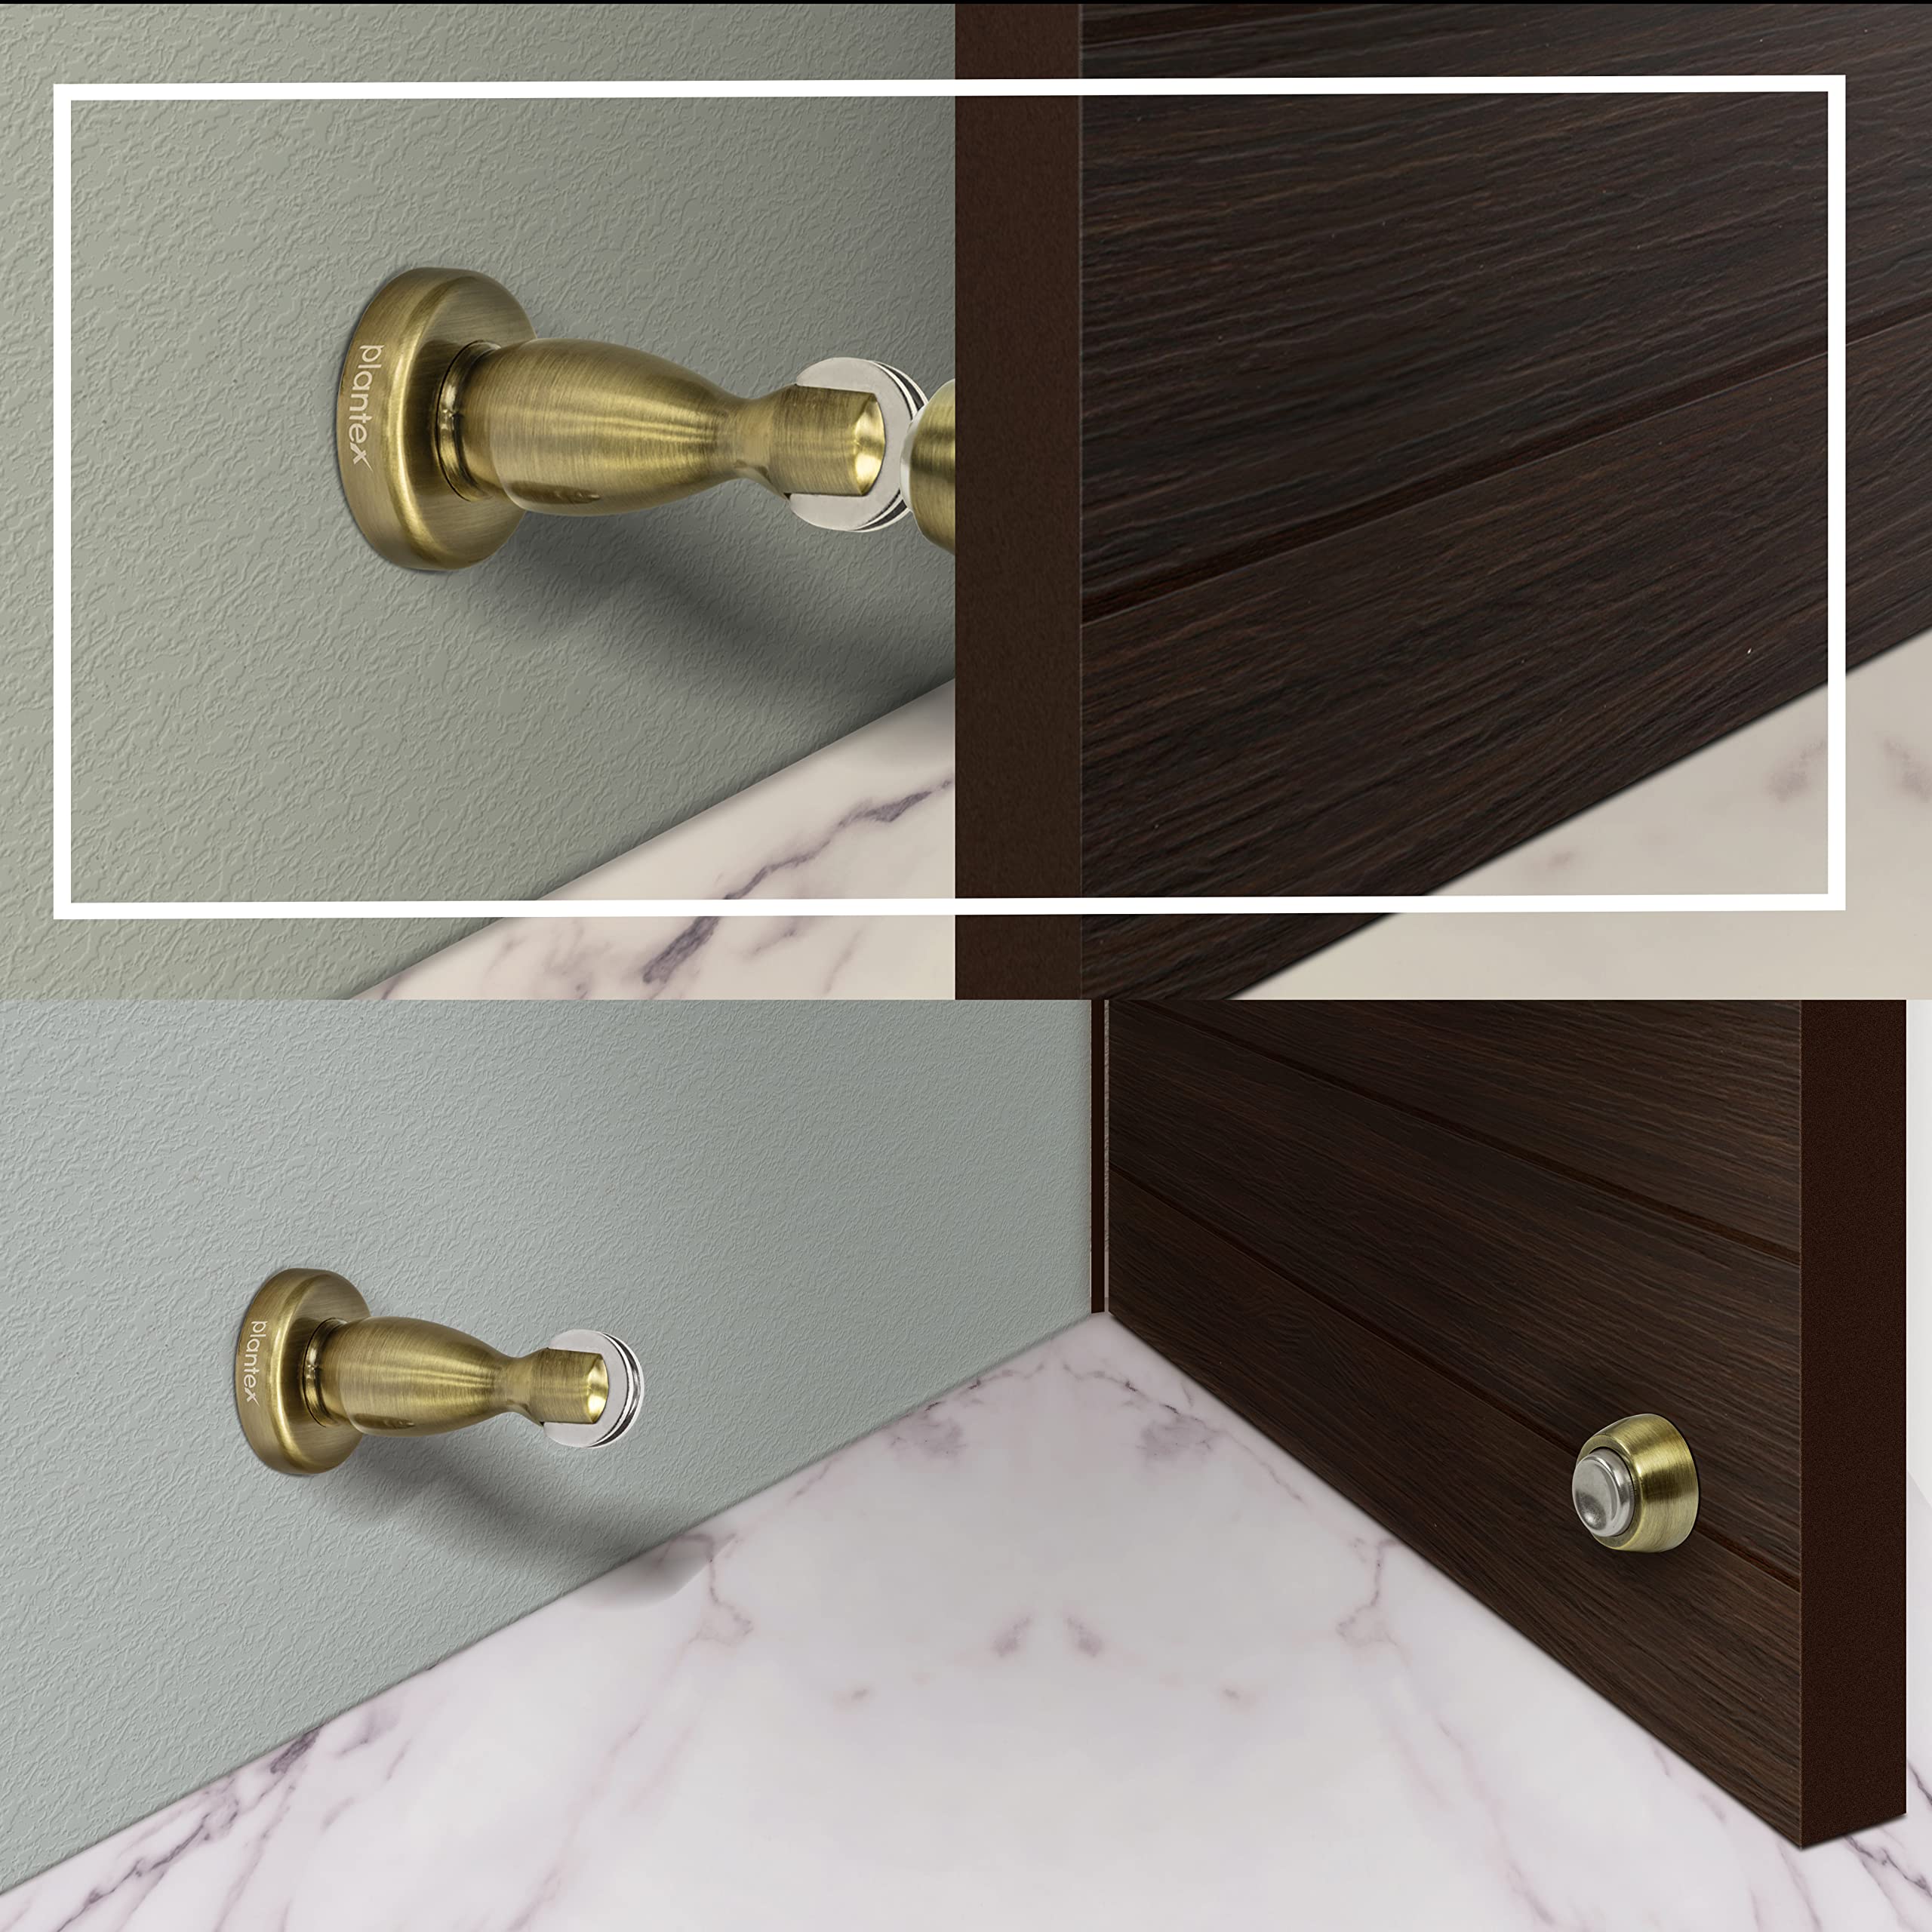 Plantex Magnetic Door Stopper for Home/ 360 Degree Magnet Door Catcher/Door Holder for Main Door/Bedroom/Office and Hotel Door - Pack of 40 (4 inch, Brass Antique)